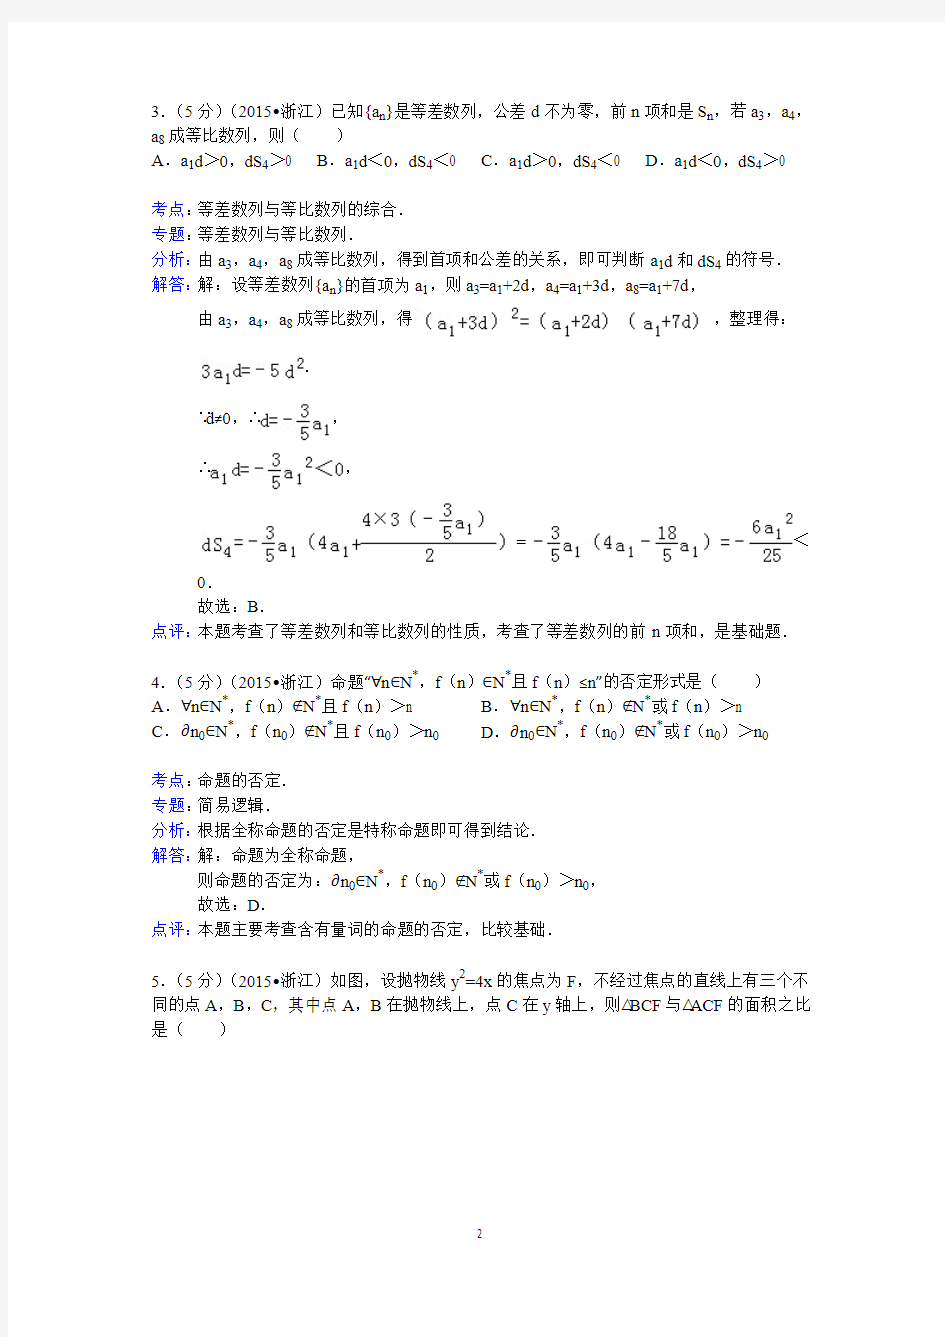 2015年浙江省高考数学试卷(理科)答案与解析